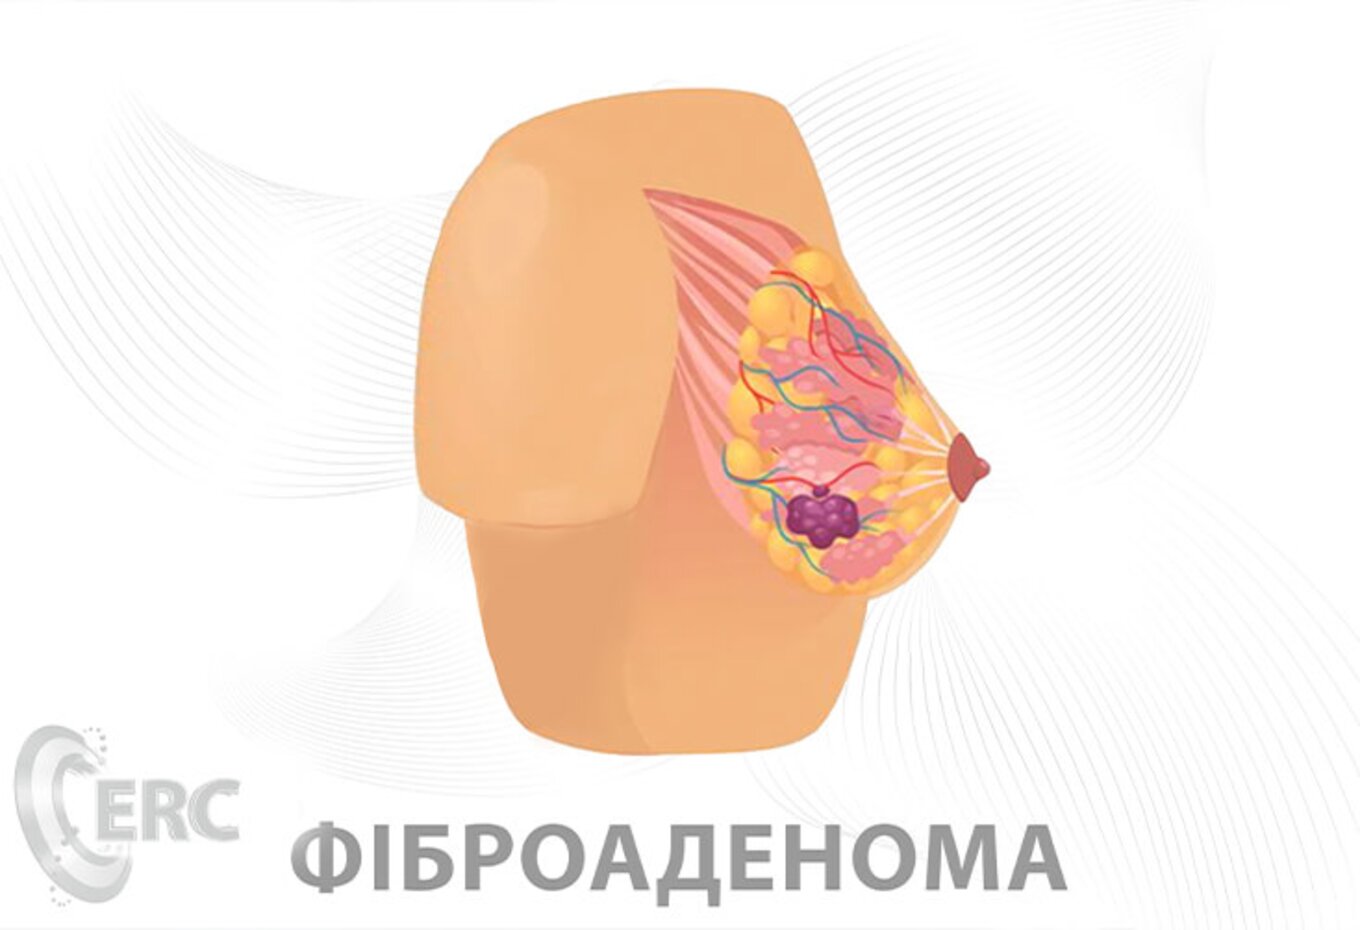 Пункция молочной железы - Вопрос маммологу - 03 Онлайн